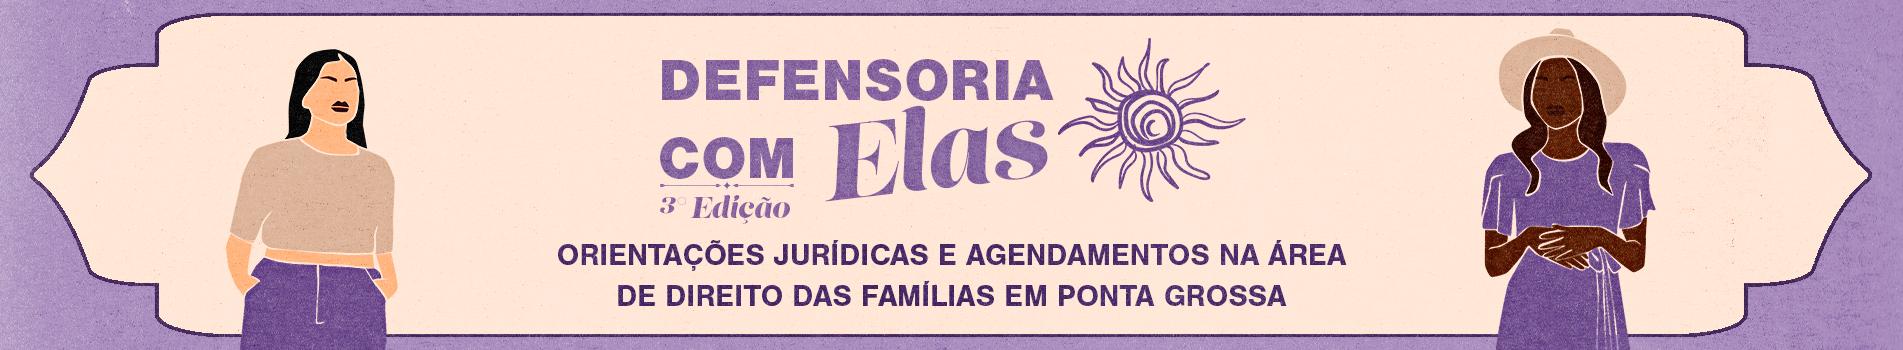 Imagem do banner de divulgação da ação Defensoria com Elas em Ponta Grossa.